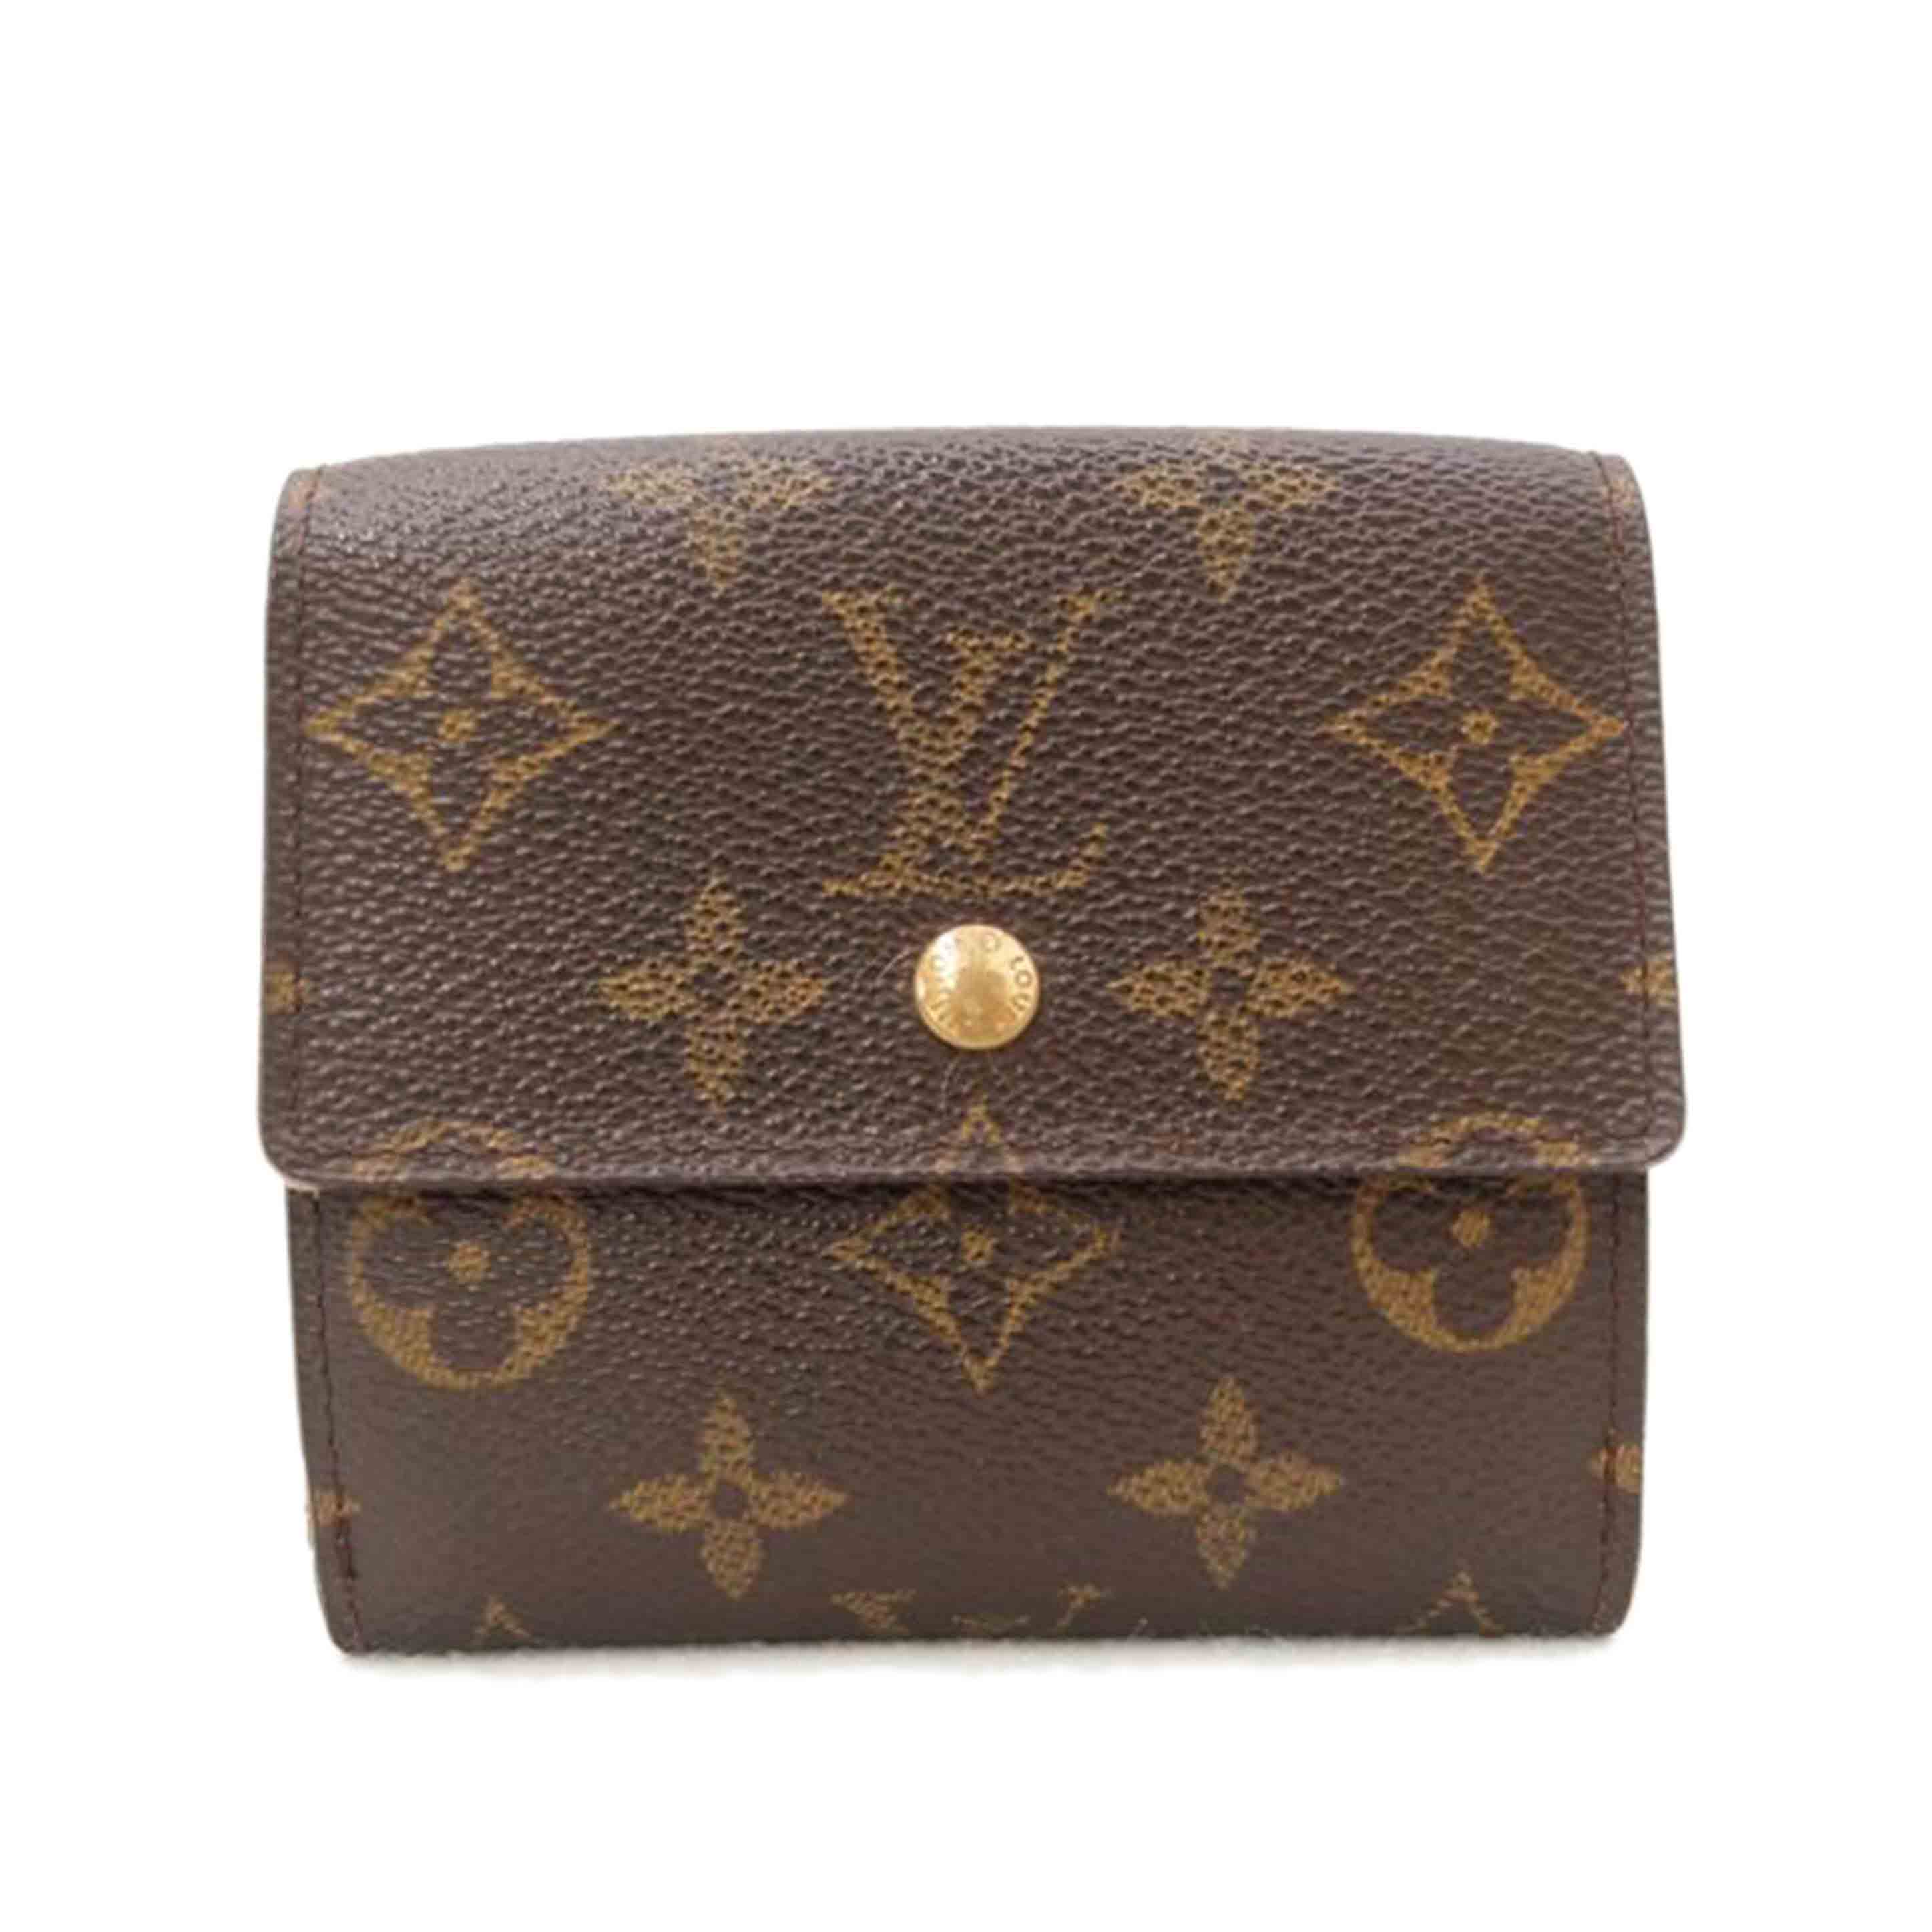 即購入匿名発送可能です✨Louis Vuitton 二つ折り財布